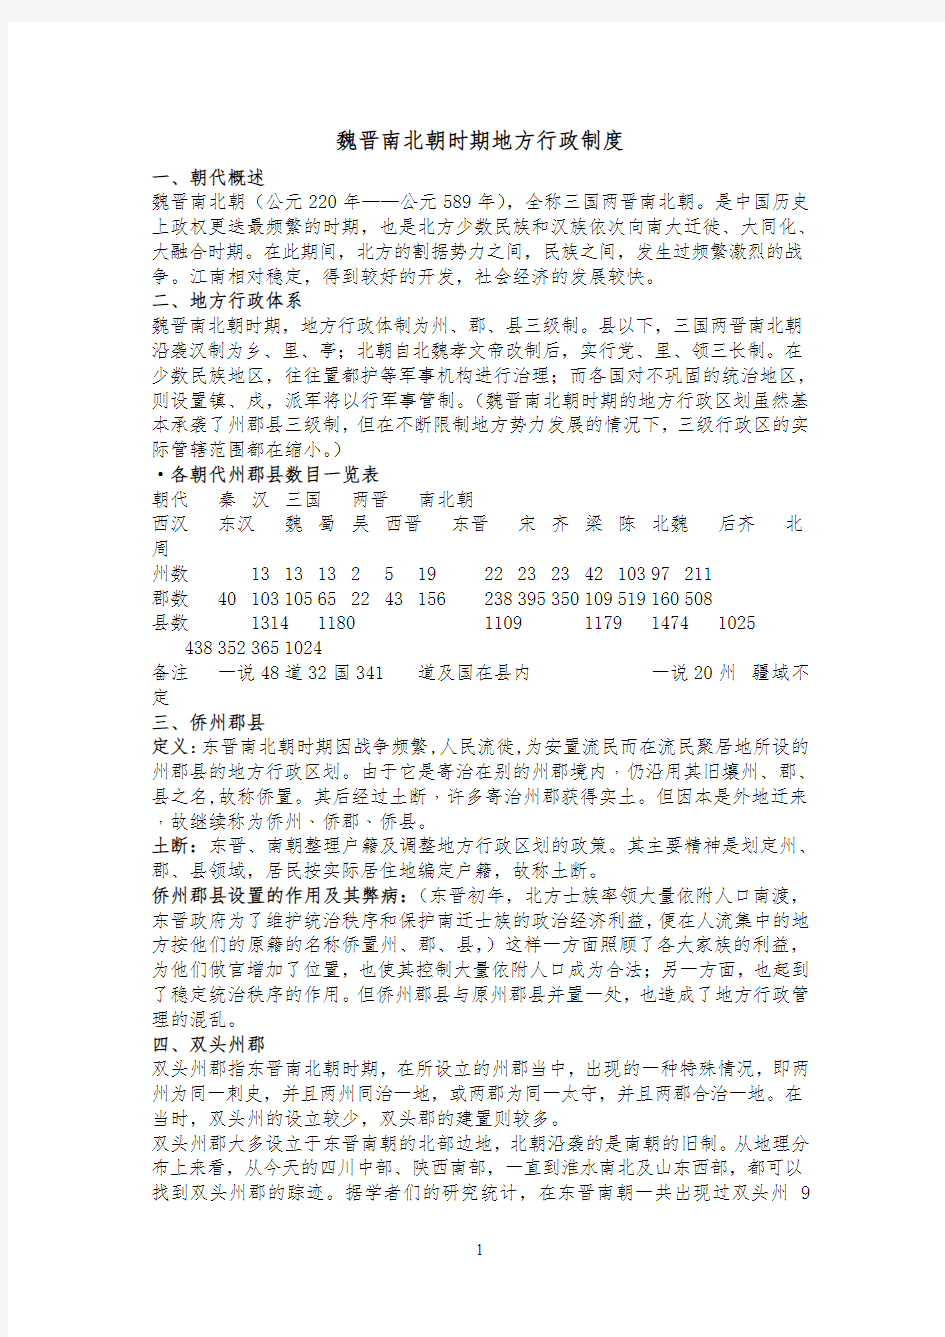 魏晋南北朝时期的地方行政制度 (2)